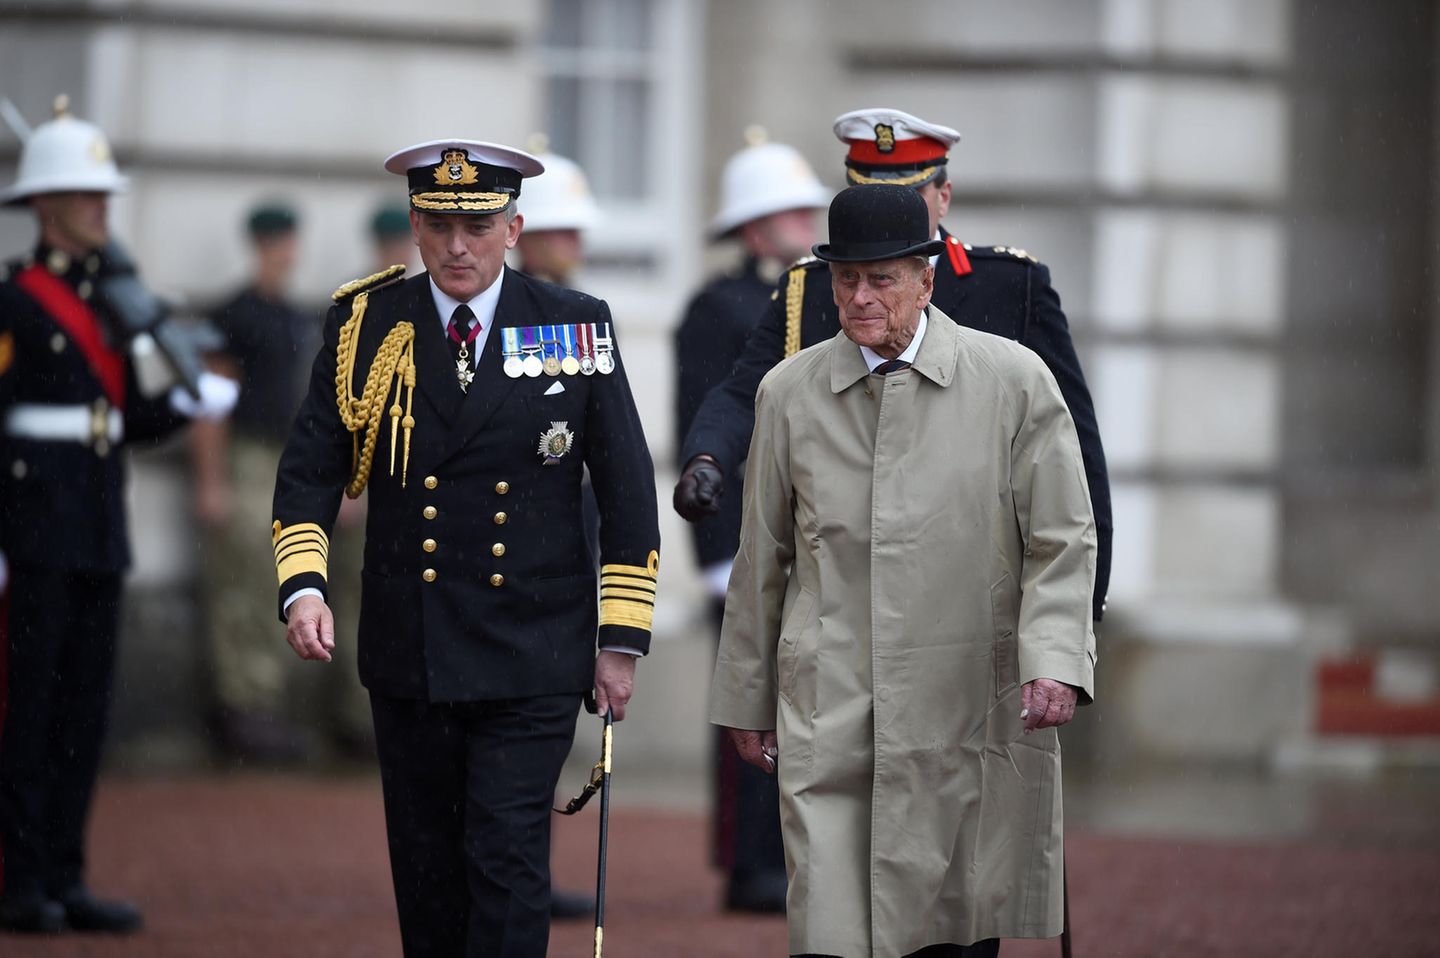 2. August 2017  Im Alter von 96 Jahren absolviert Prinz Philip, der Ehemann der Queen, seinen letzten offiziellen Termin. Vor dem Buckingham Palace nimmt er eine Militärparade der Royal Marines ab. Seinen Ruhestand hat er sich nun mehr als nur verdient. Die Anzahl seiner Termine verblüfft: